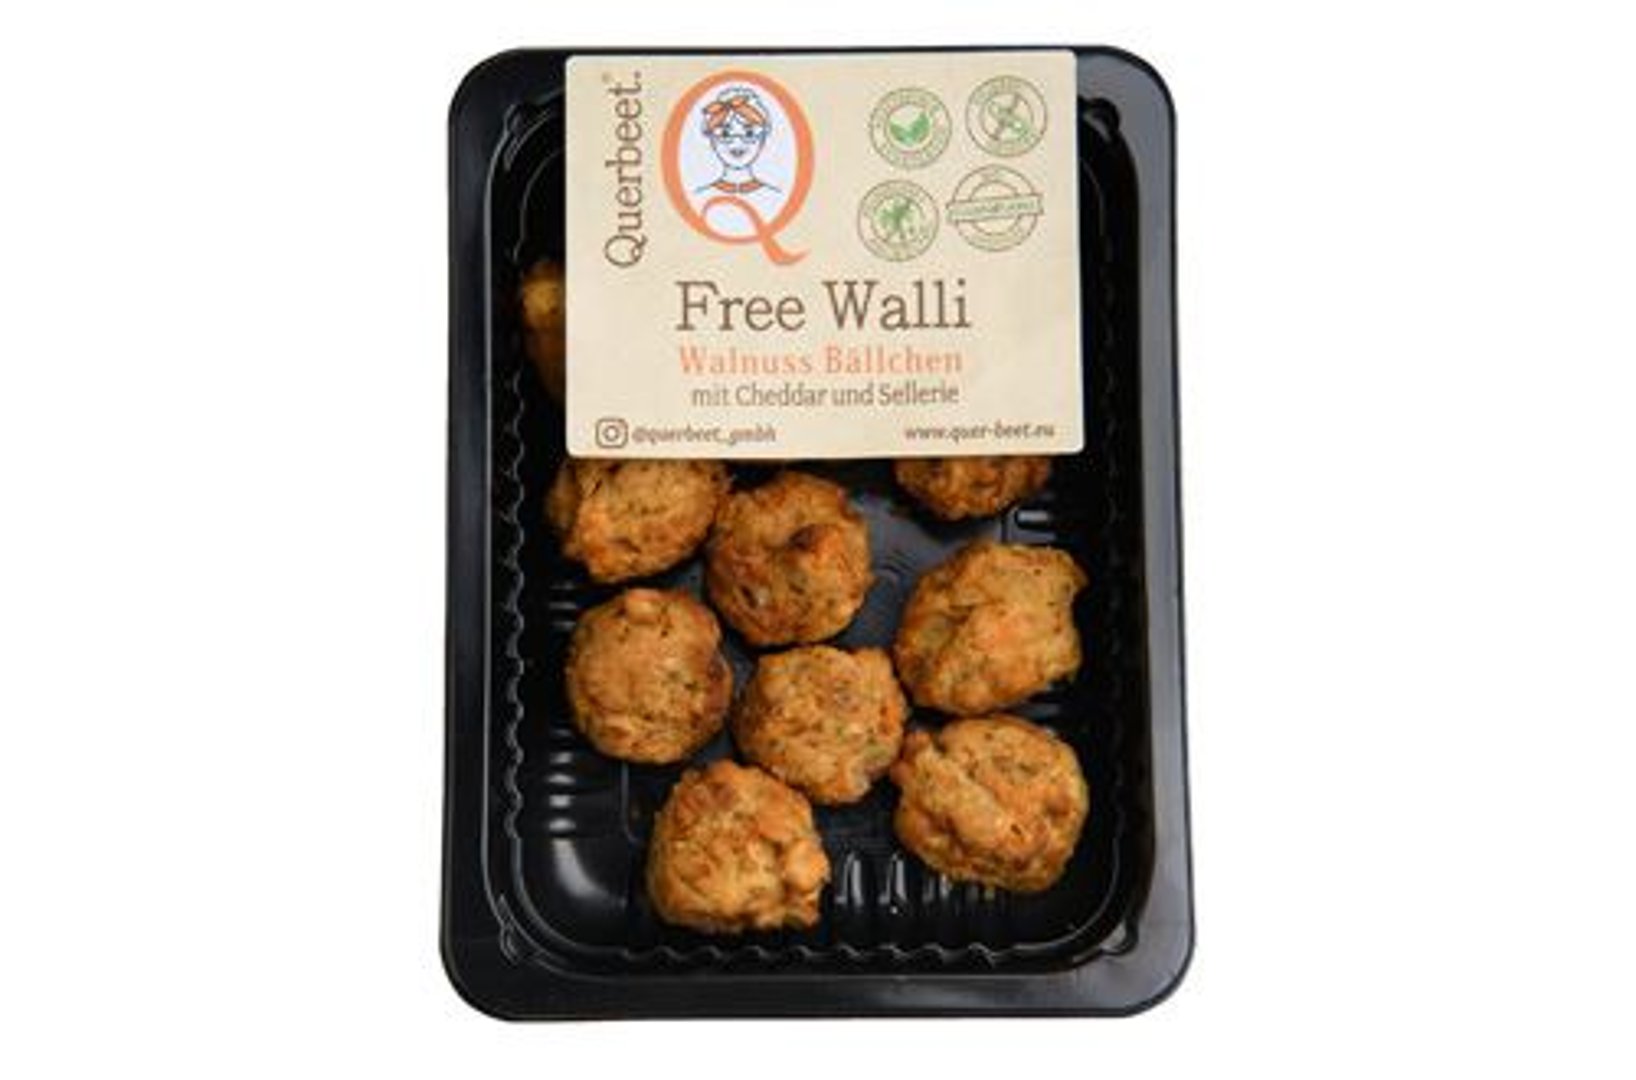 Querbeet - Free Walli Walnuss Bällchen vegetarisch gekühlt 12 Stück à 15 g - 6 x 180 g Karton